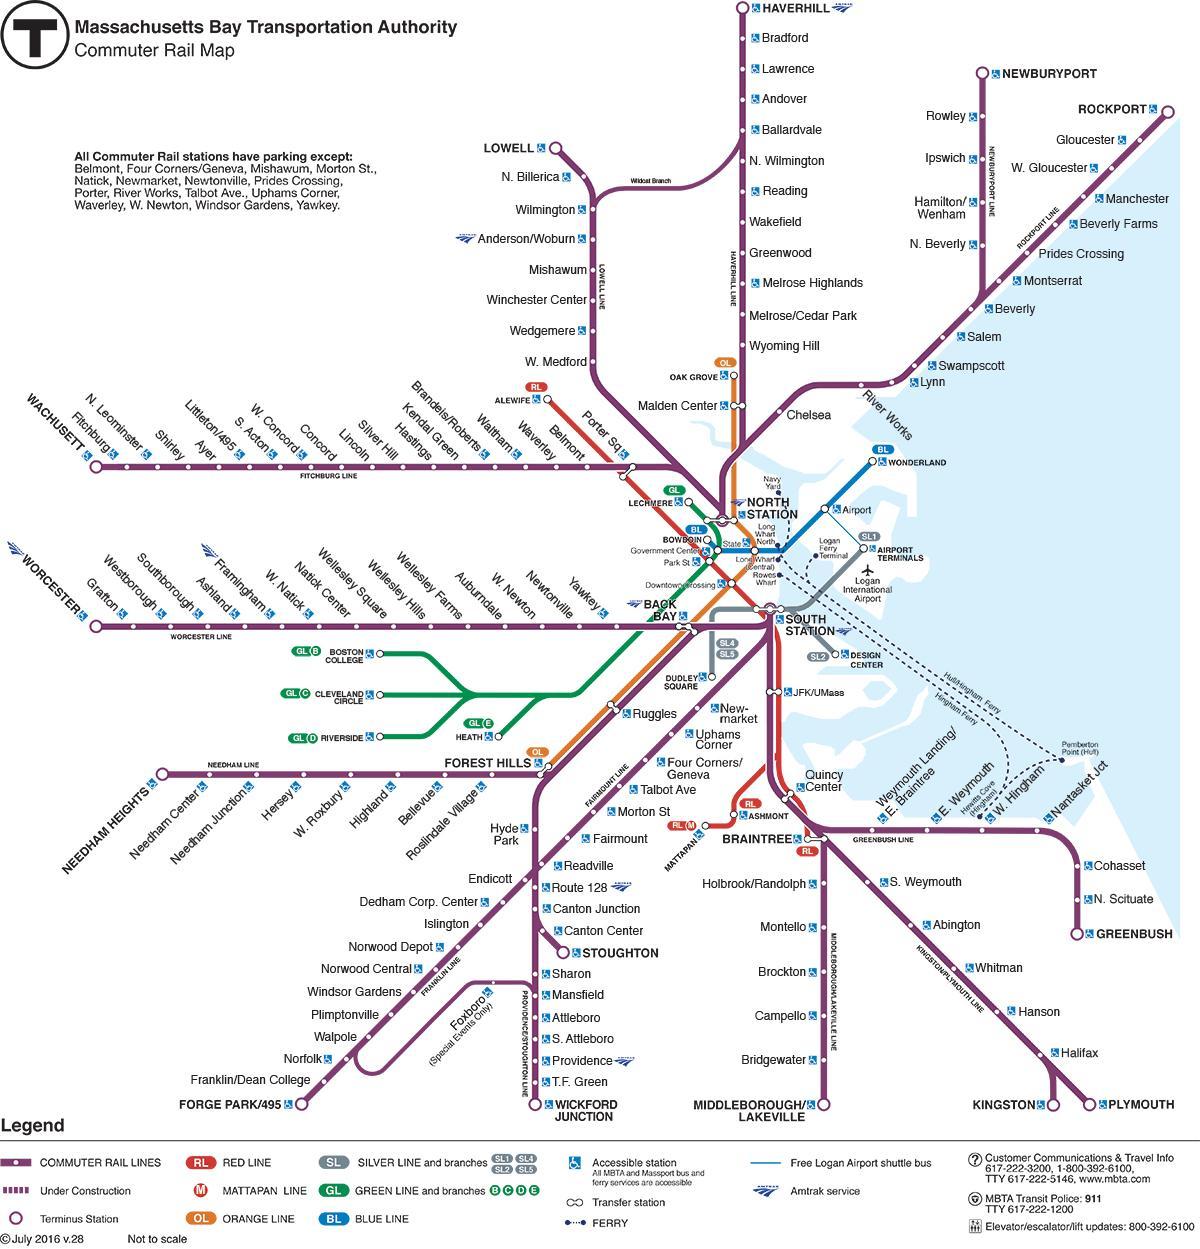 προαστιακό σιδηροδρομικό χάρτη της Βοστώνης